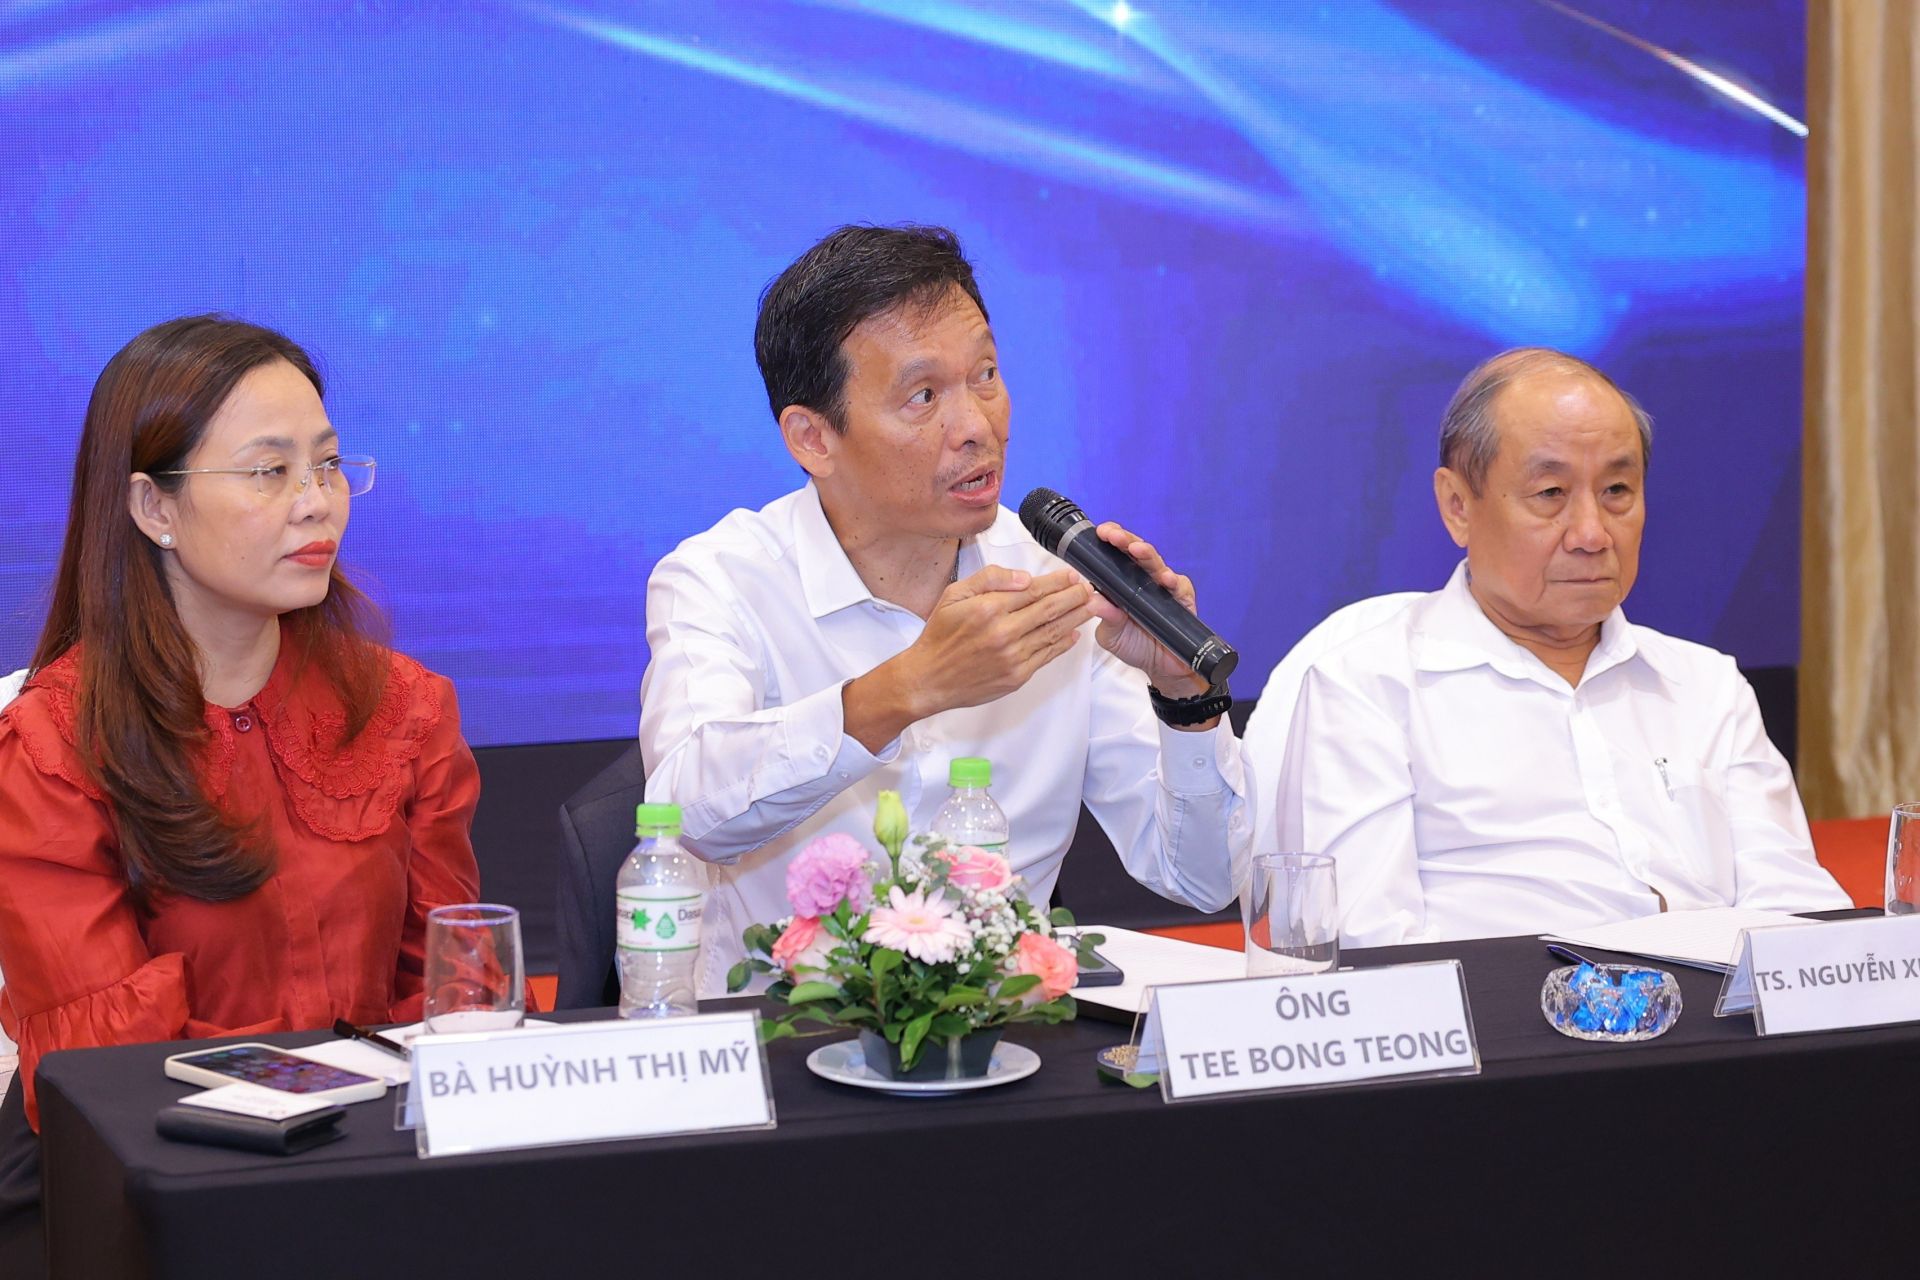 Ông BT Tee - Tổng Giám đốc Informa Markets Việt Nam chia sẻ tại Họp báo